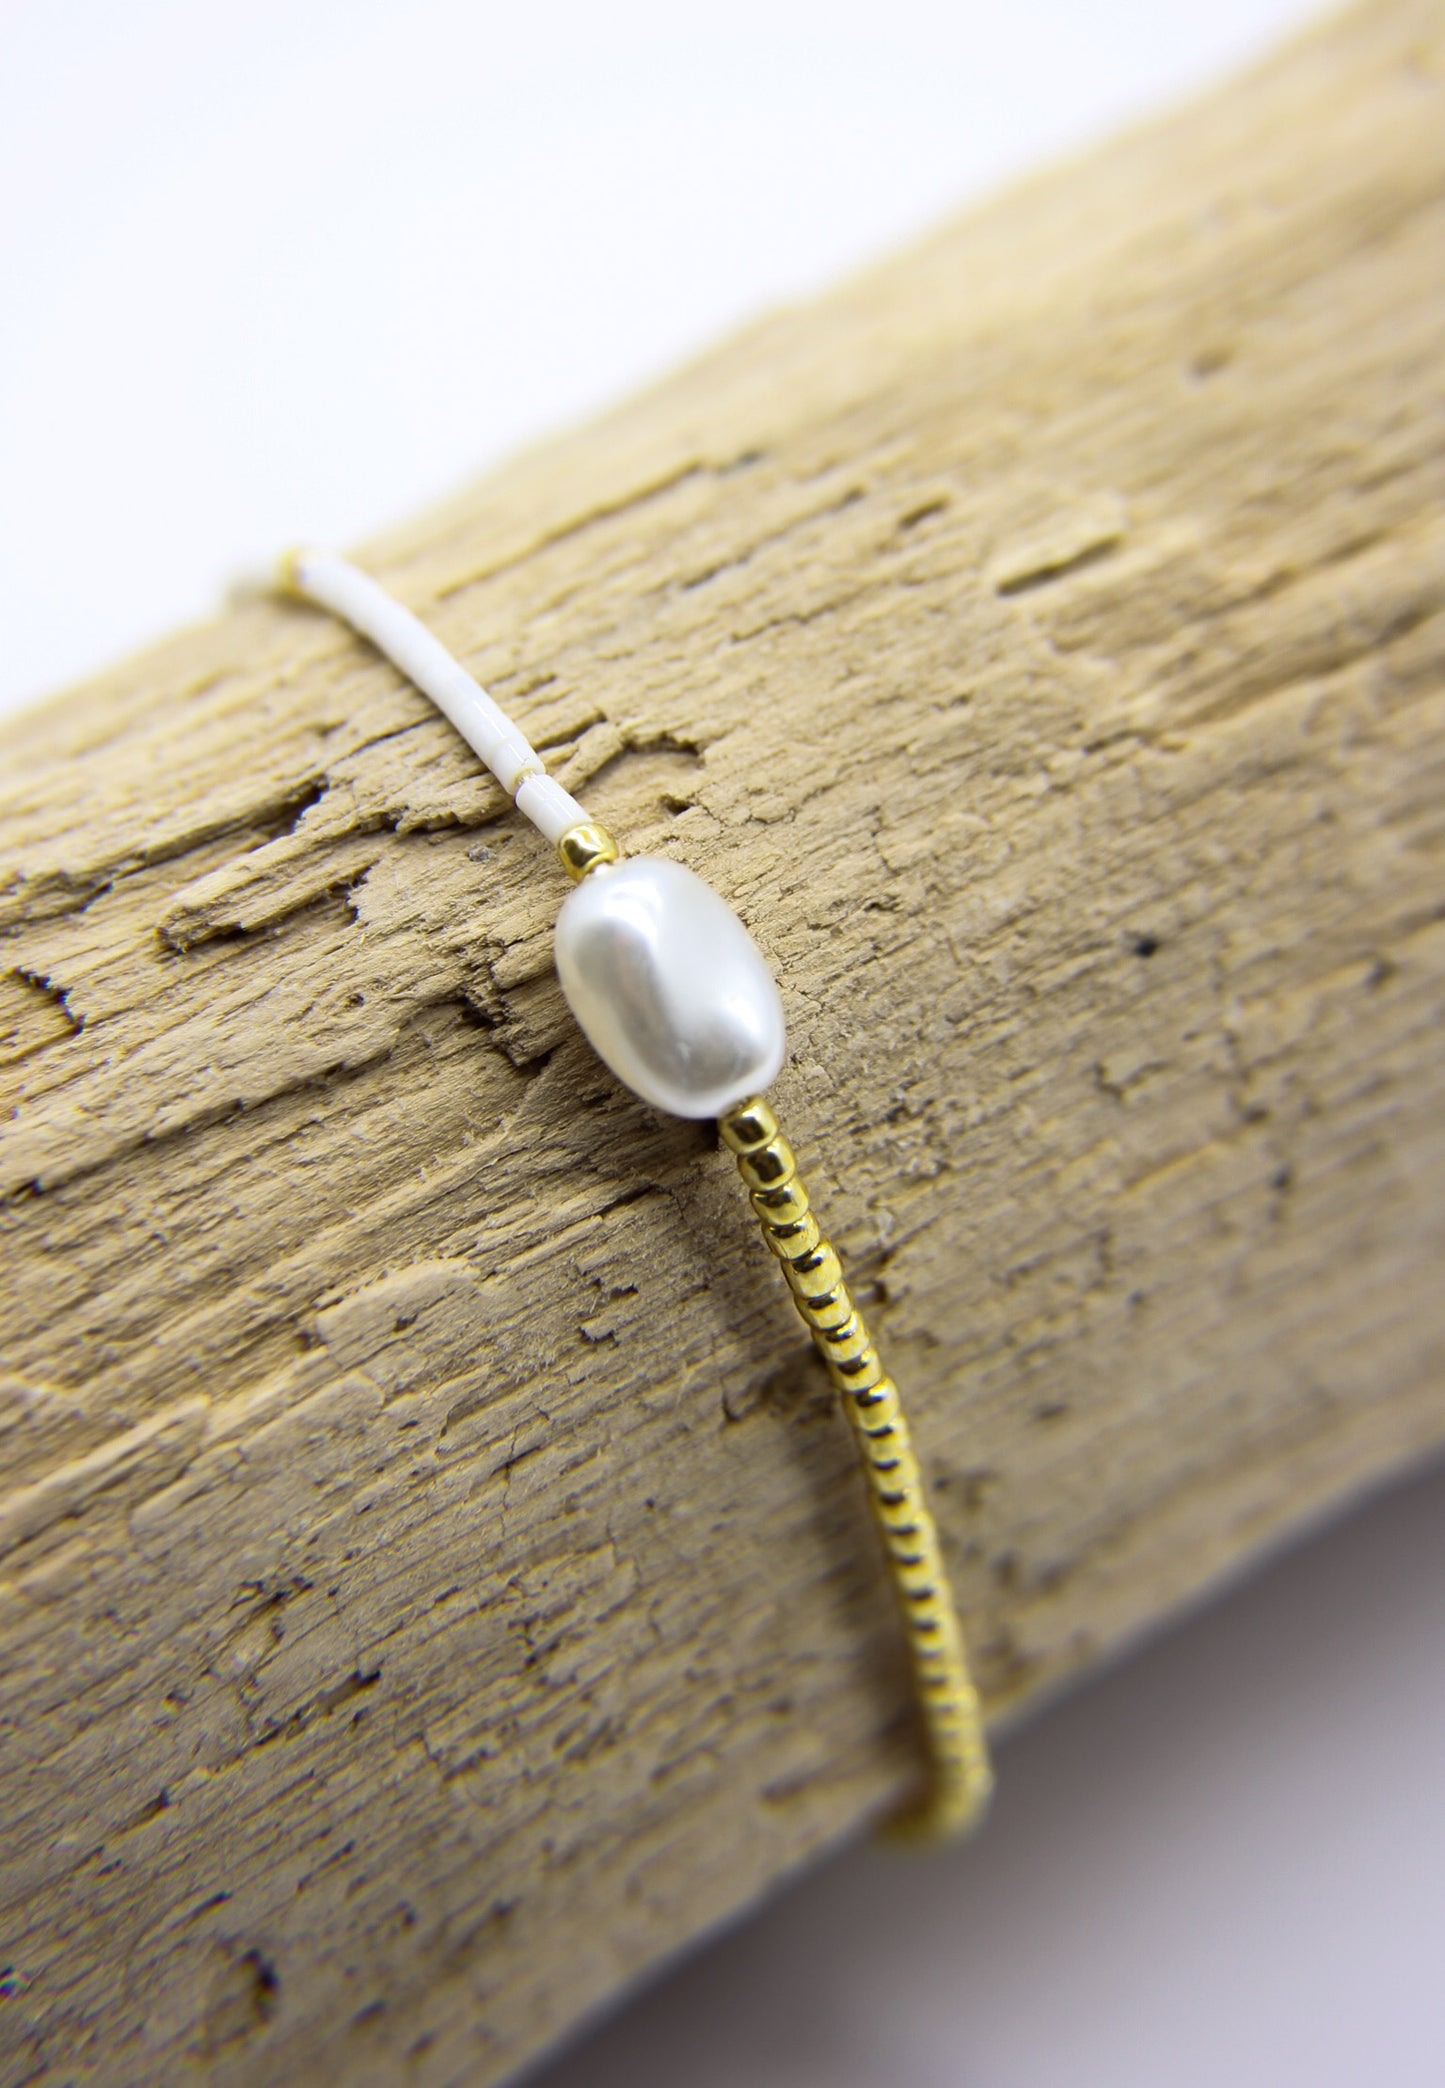 Vaiava - Seed Bead Bracelet with Pearl